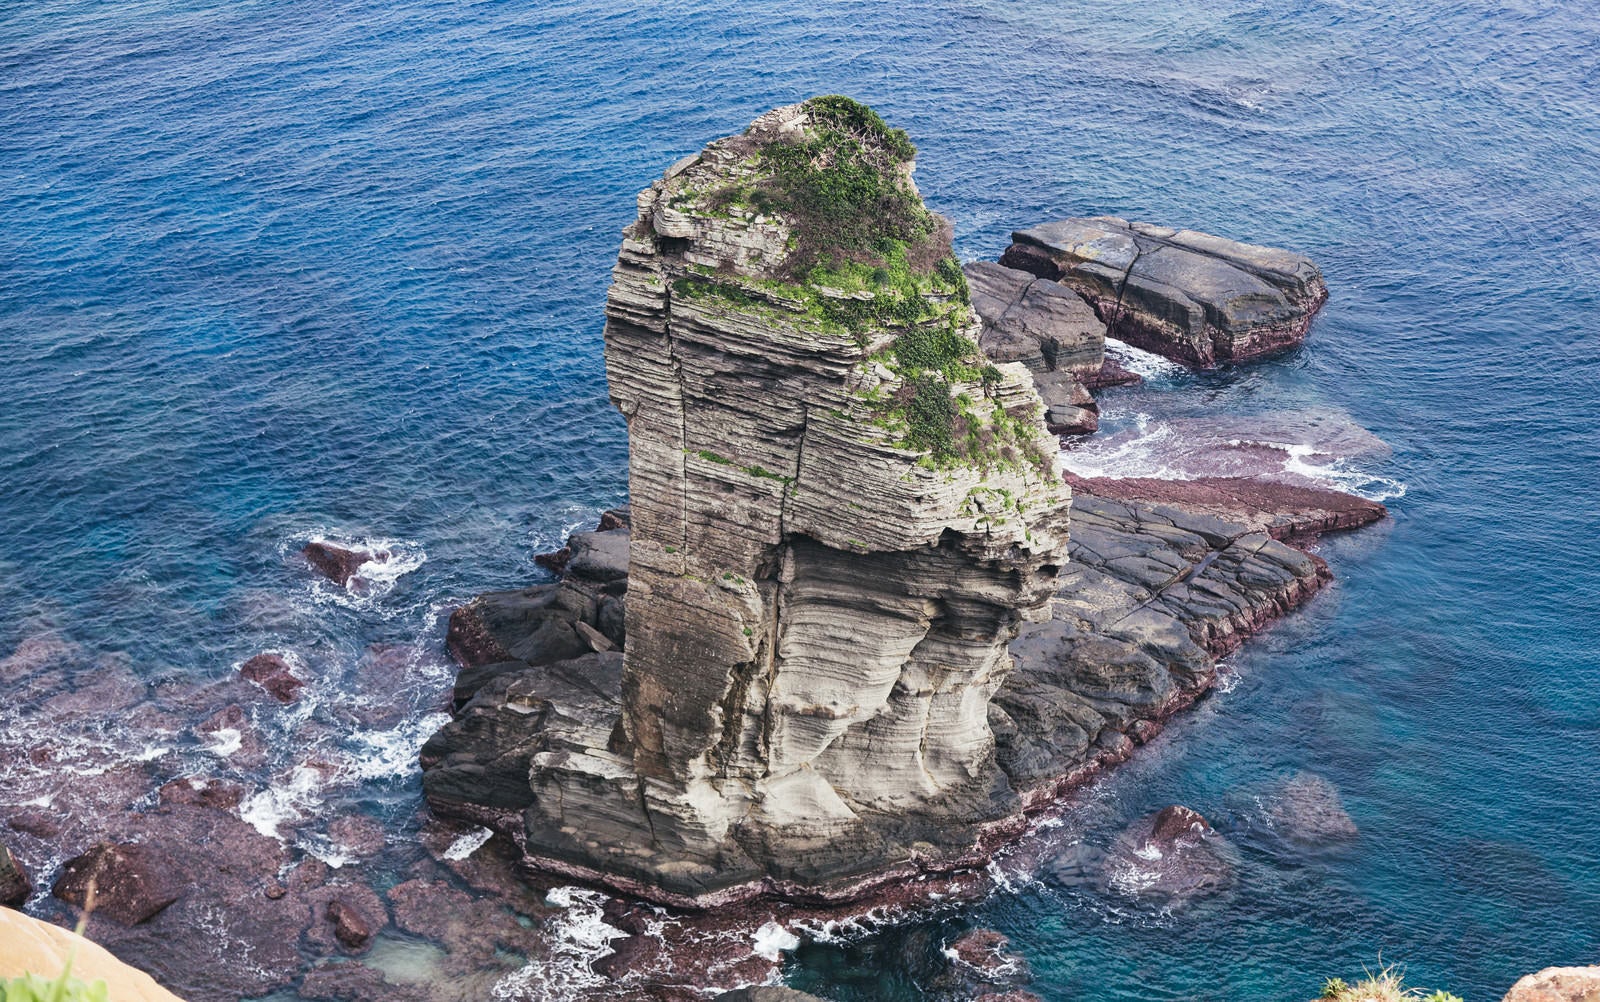 「与那国島の立神岩」の写真